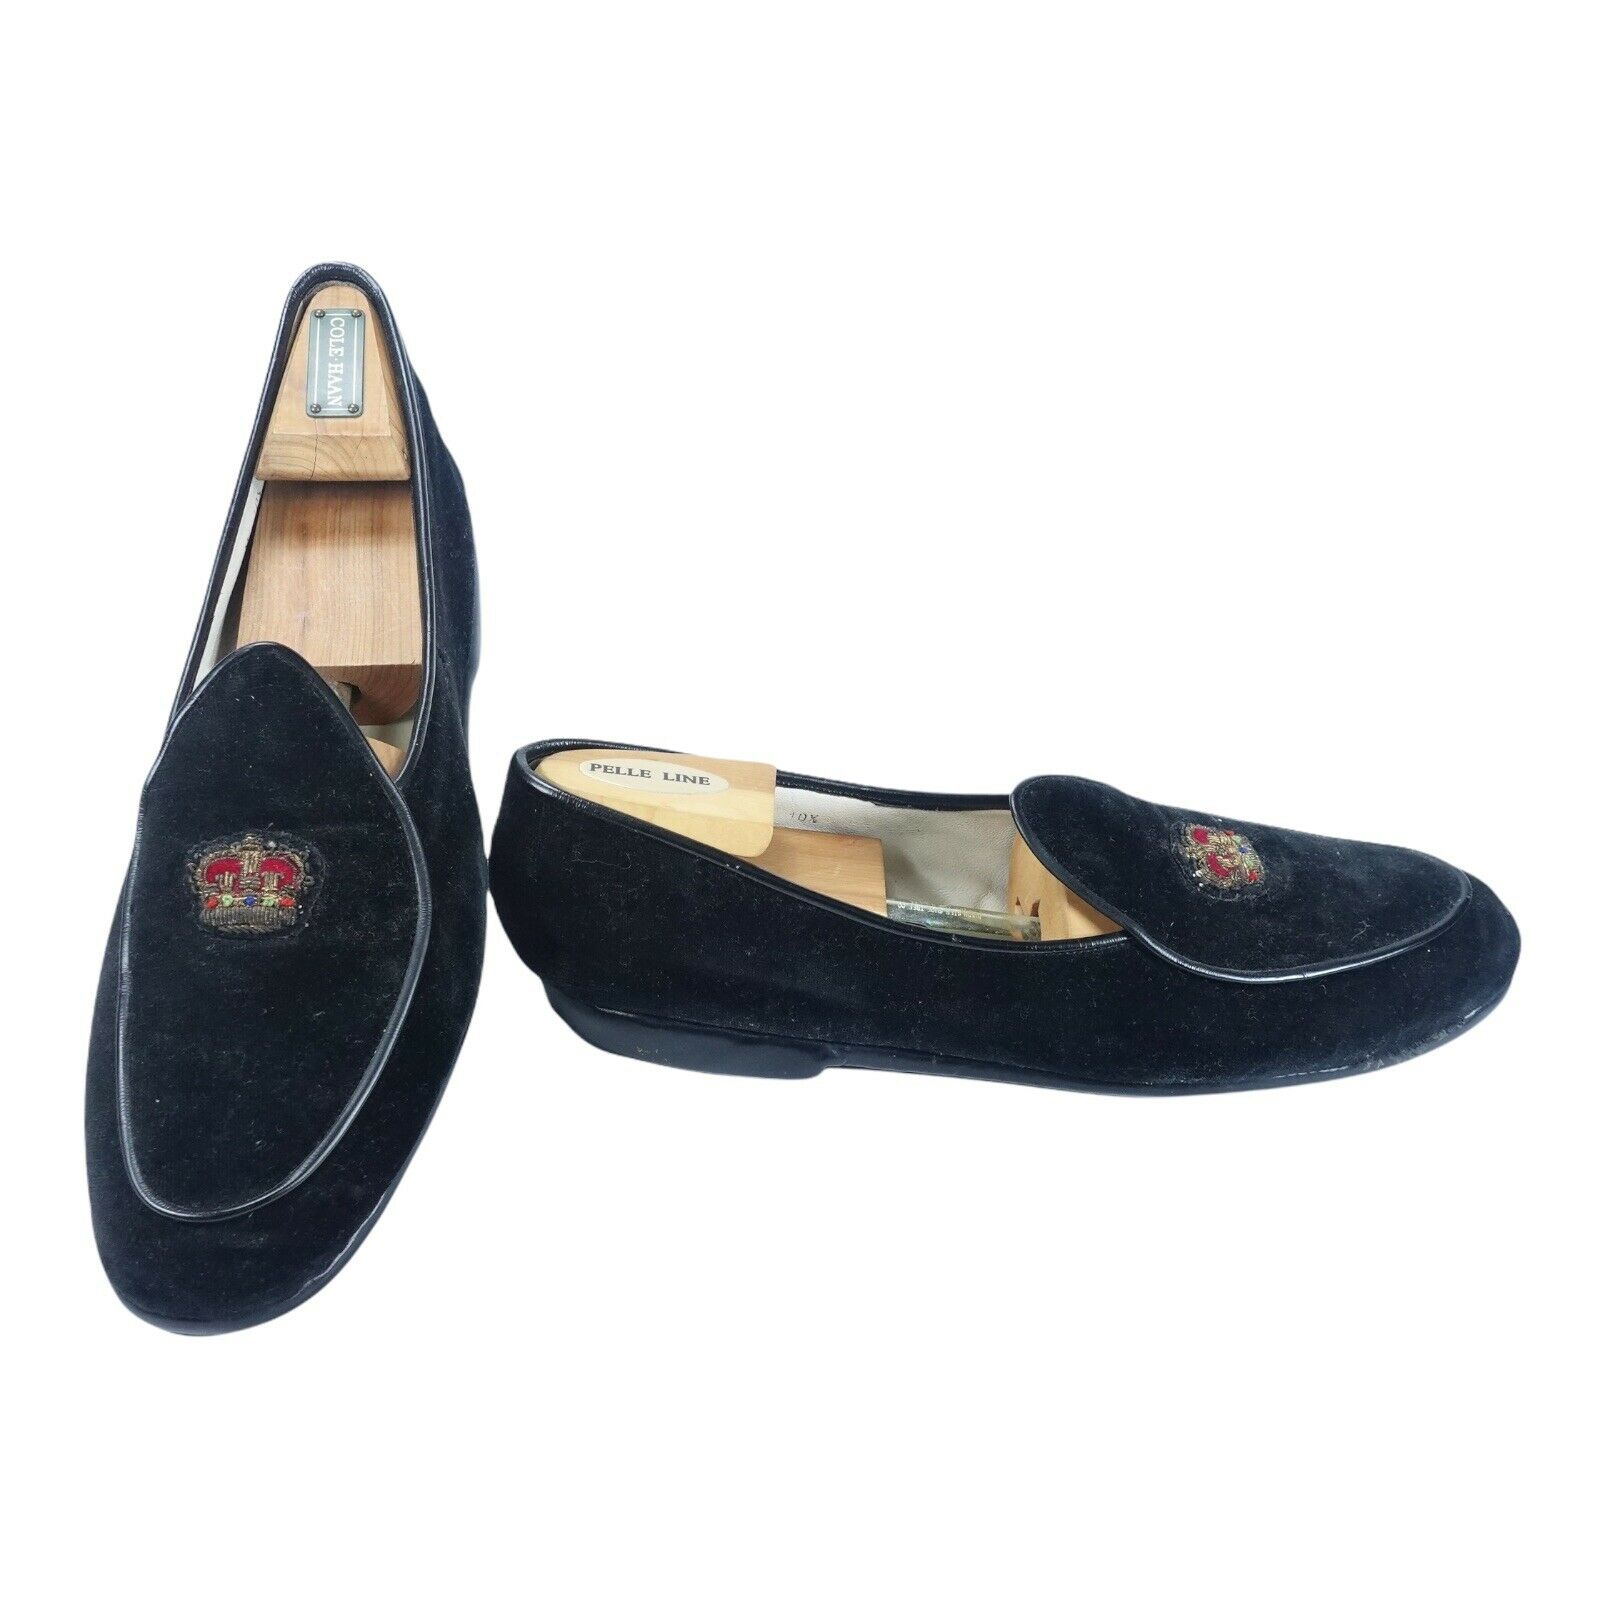 Belgian Shoes Loafers Black Suede Sz 10.5 Need Repair/Restoration